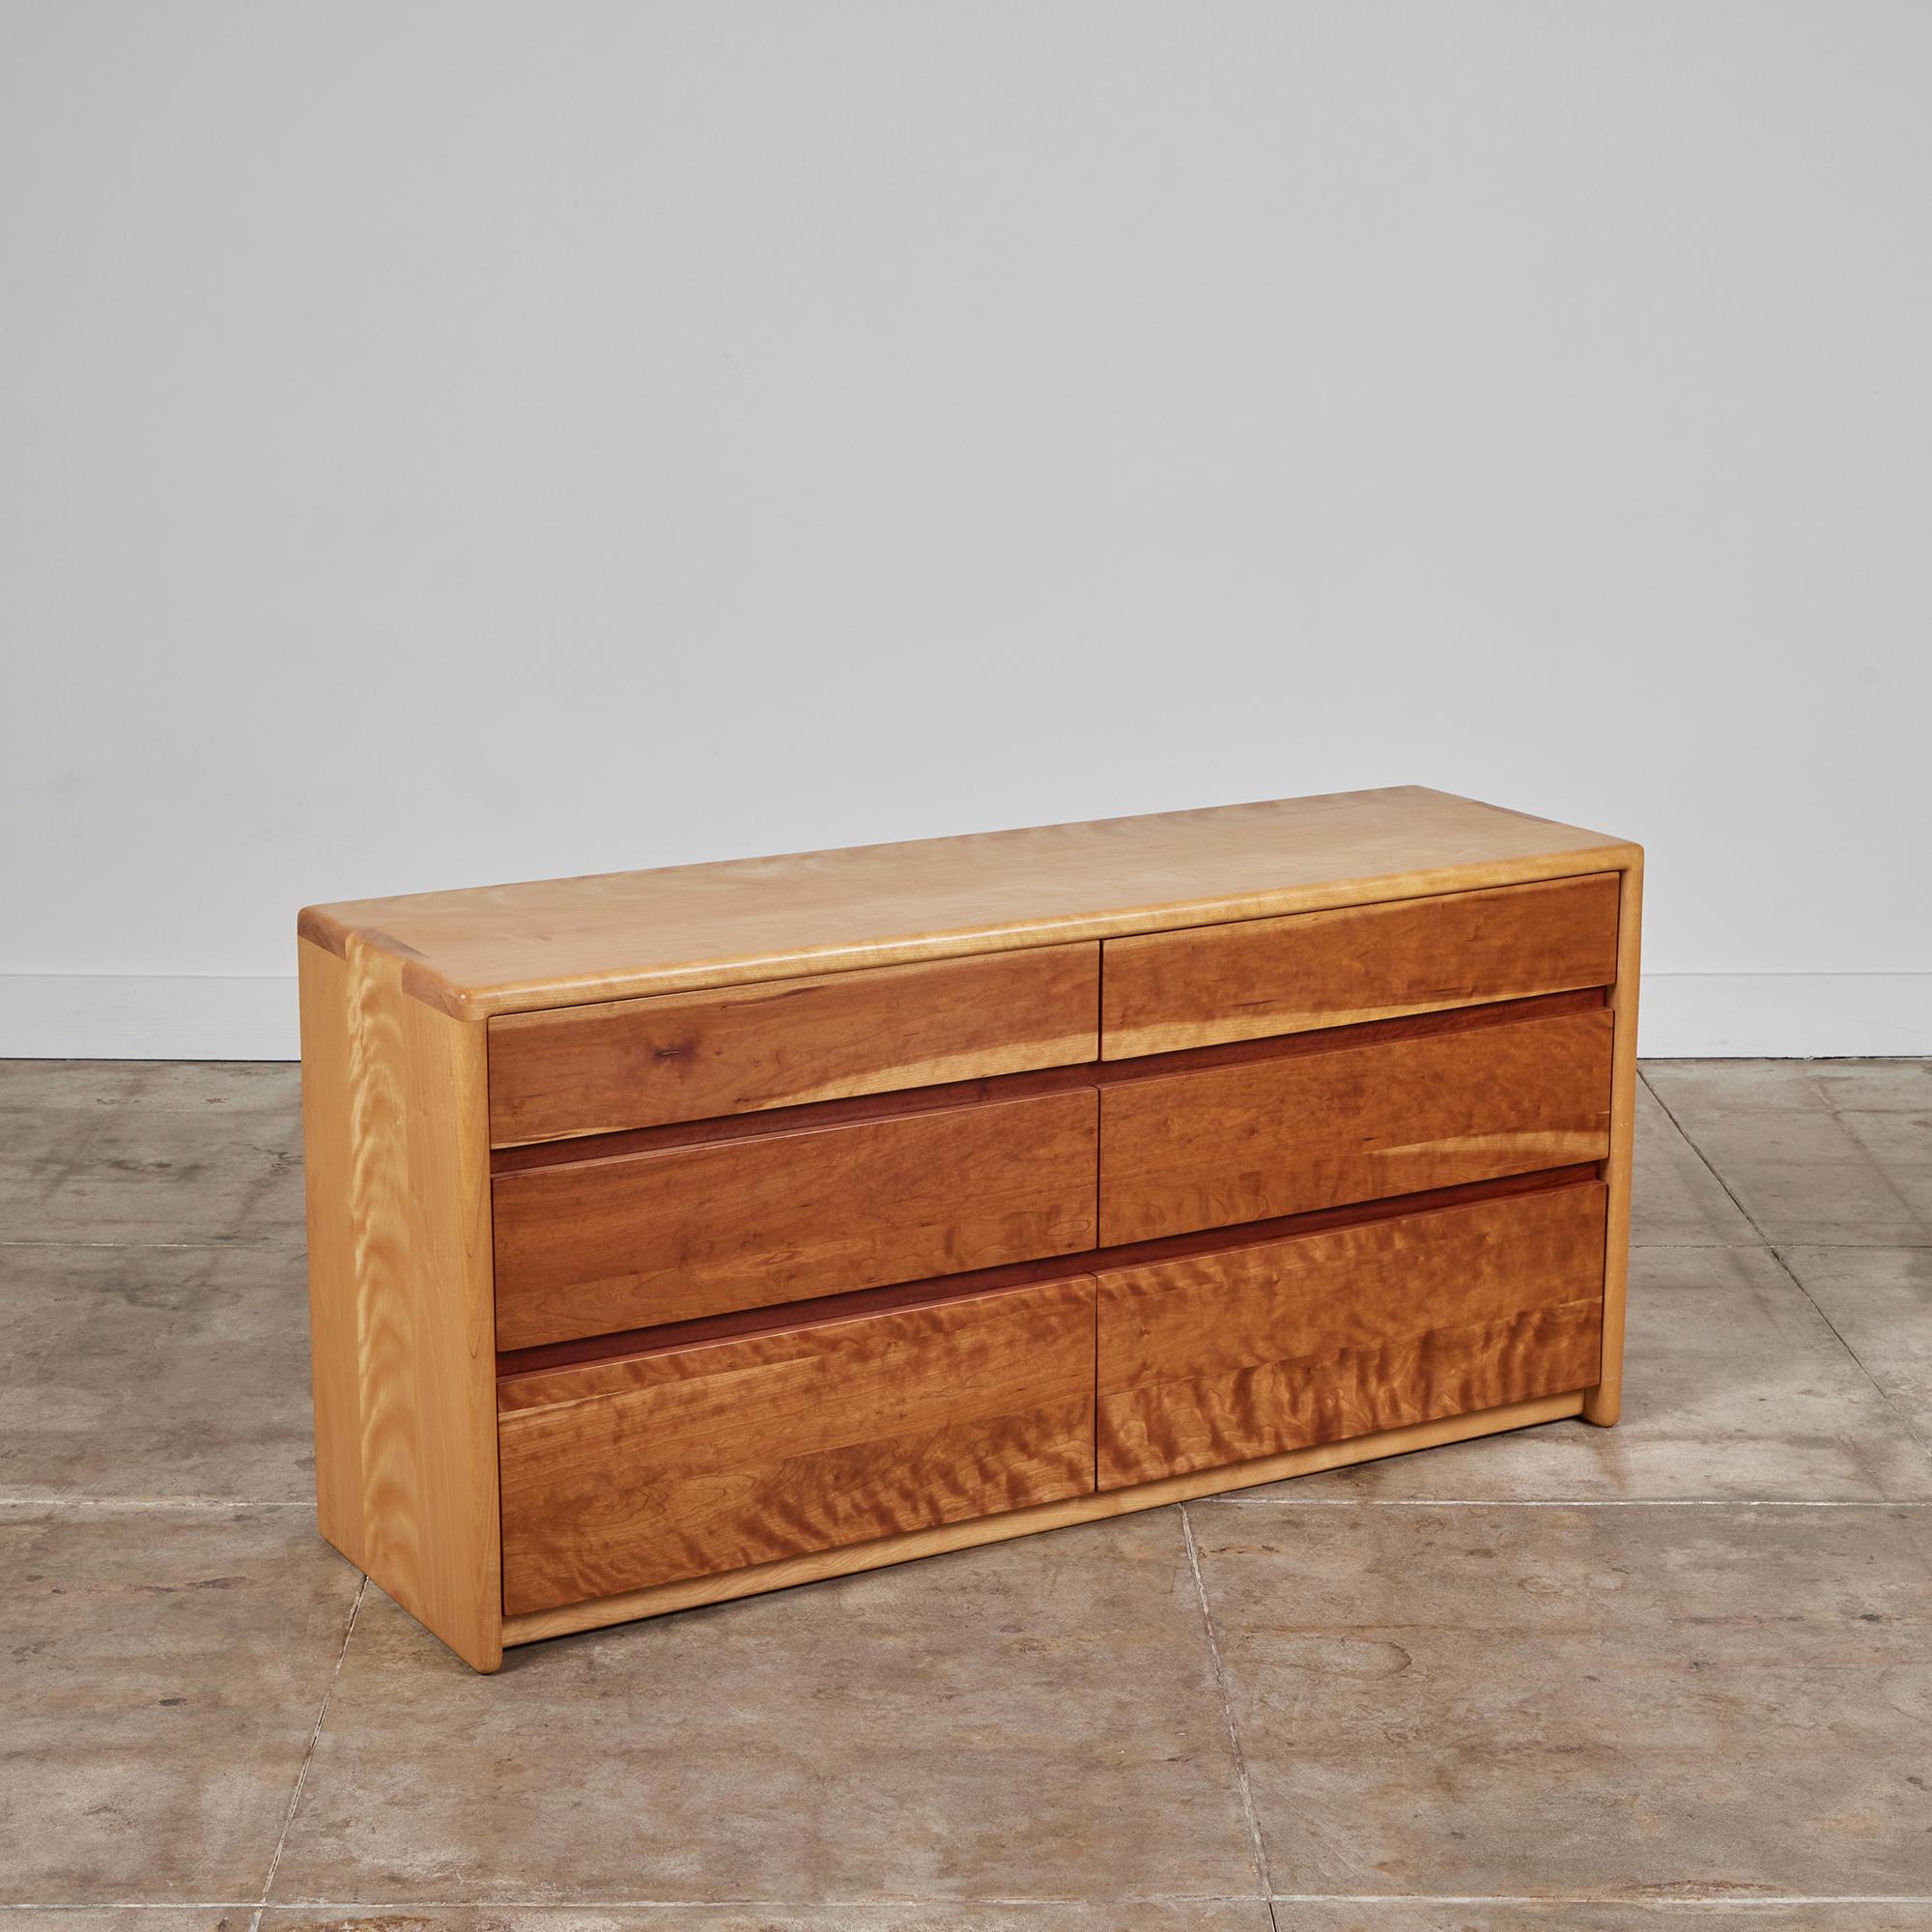 Commode par Gerald McCabe pour Eon Furniture, c.1997, USA. La commode en bois encadrée d'érable présente des bords arrondis doux avec des détails d'aboutage sur les bords. Les six tiroirs à façade plate sont en bois de shedua. Cette pièce est signée